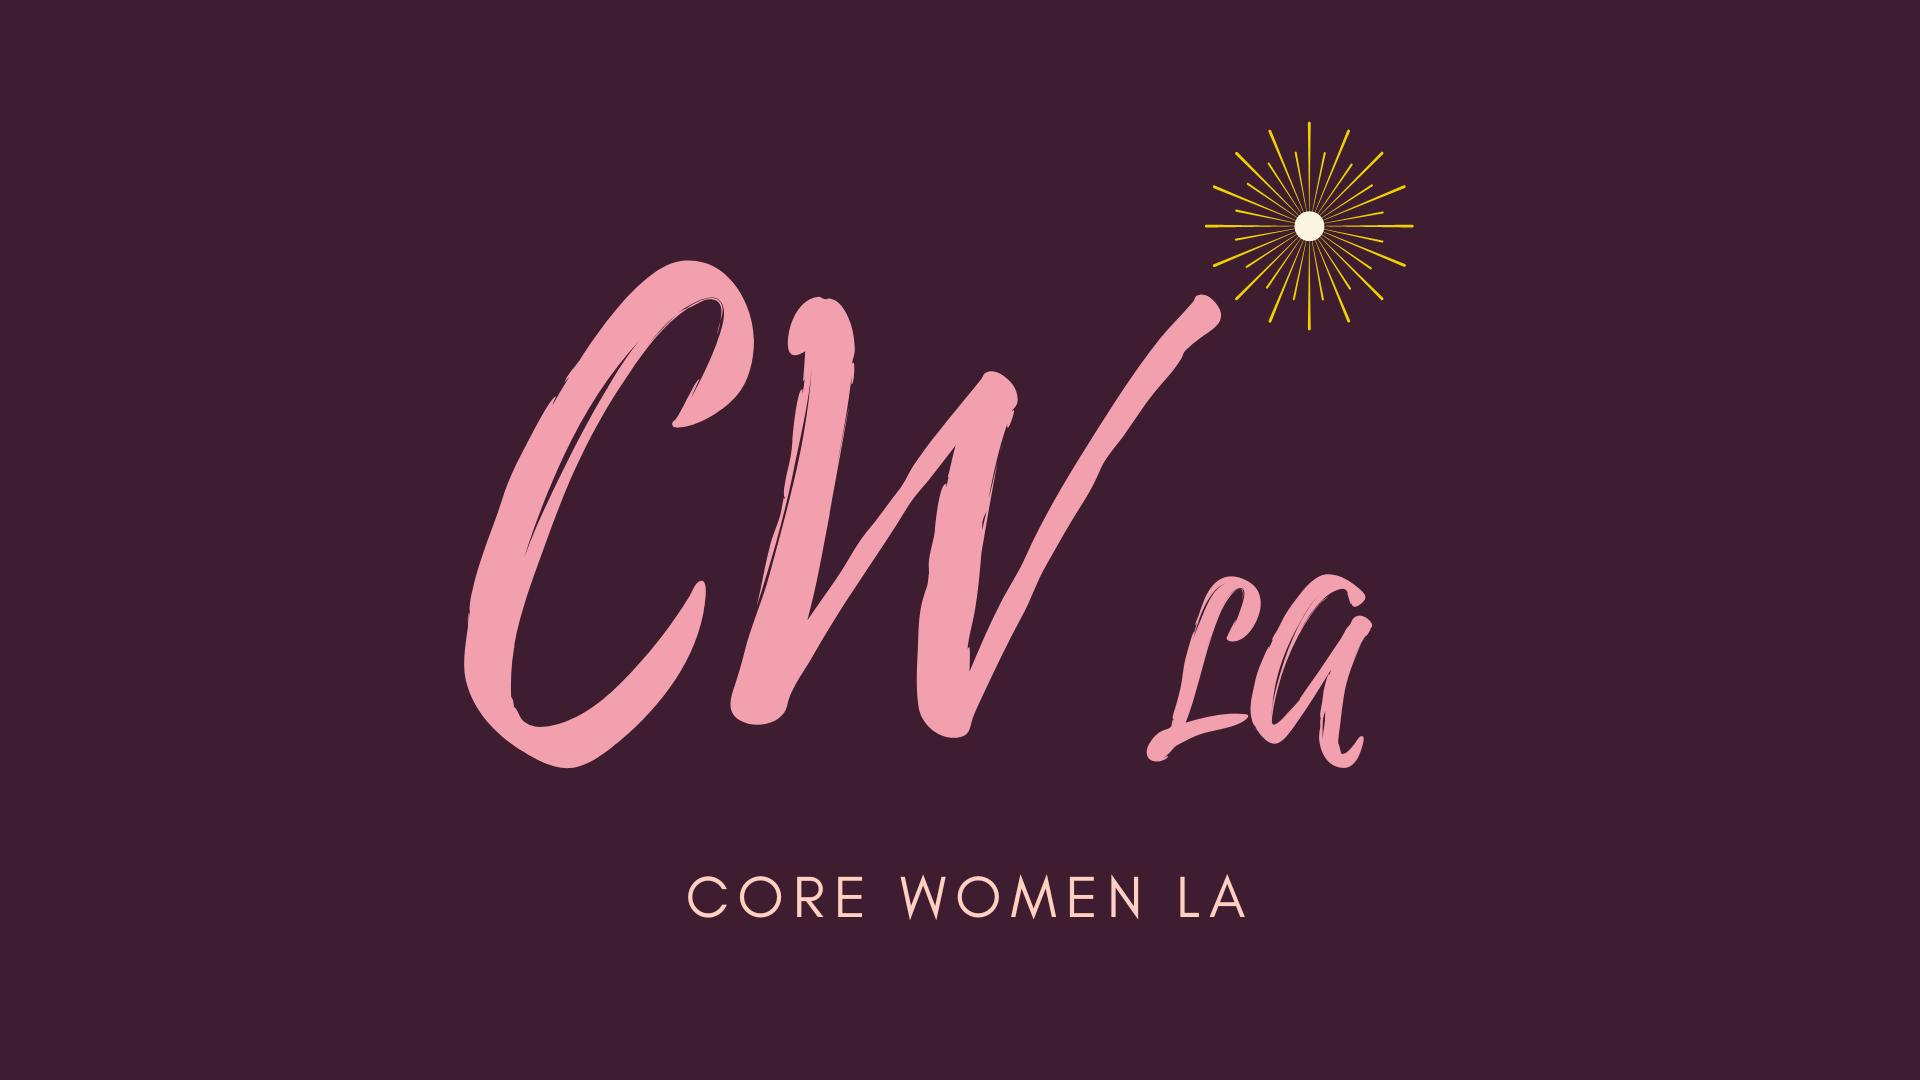 Core Women LA